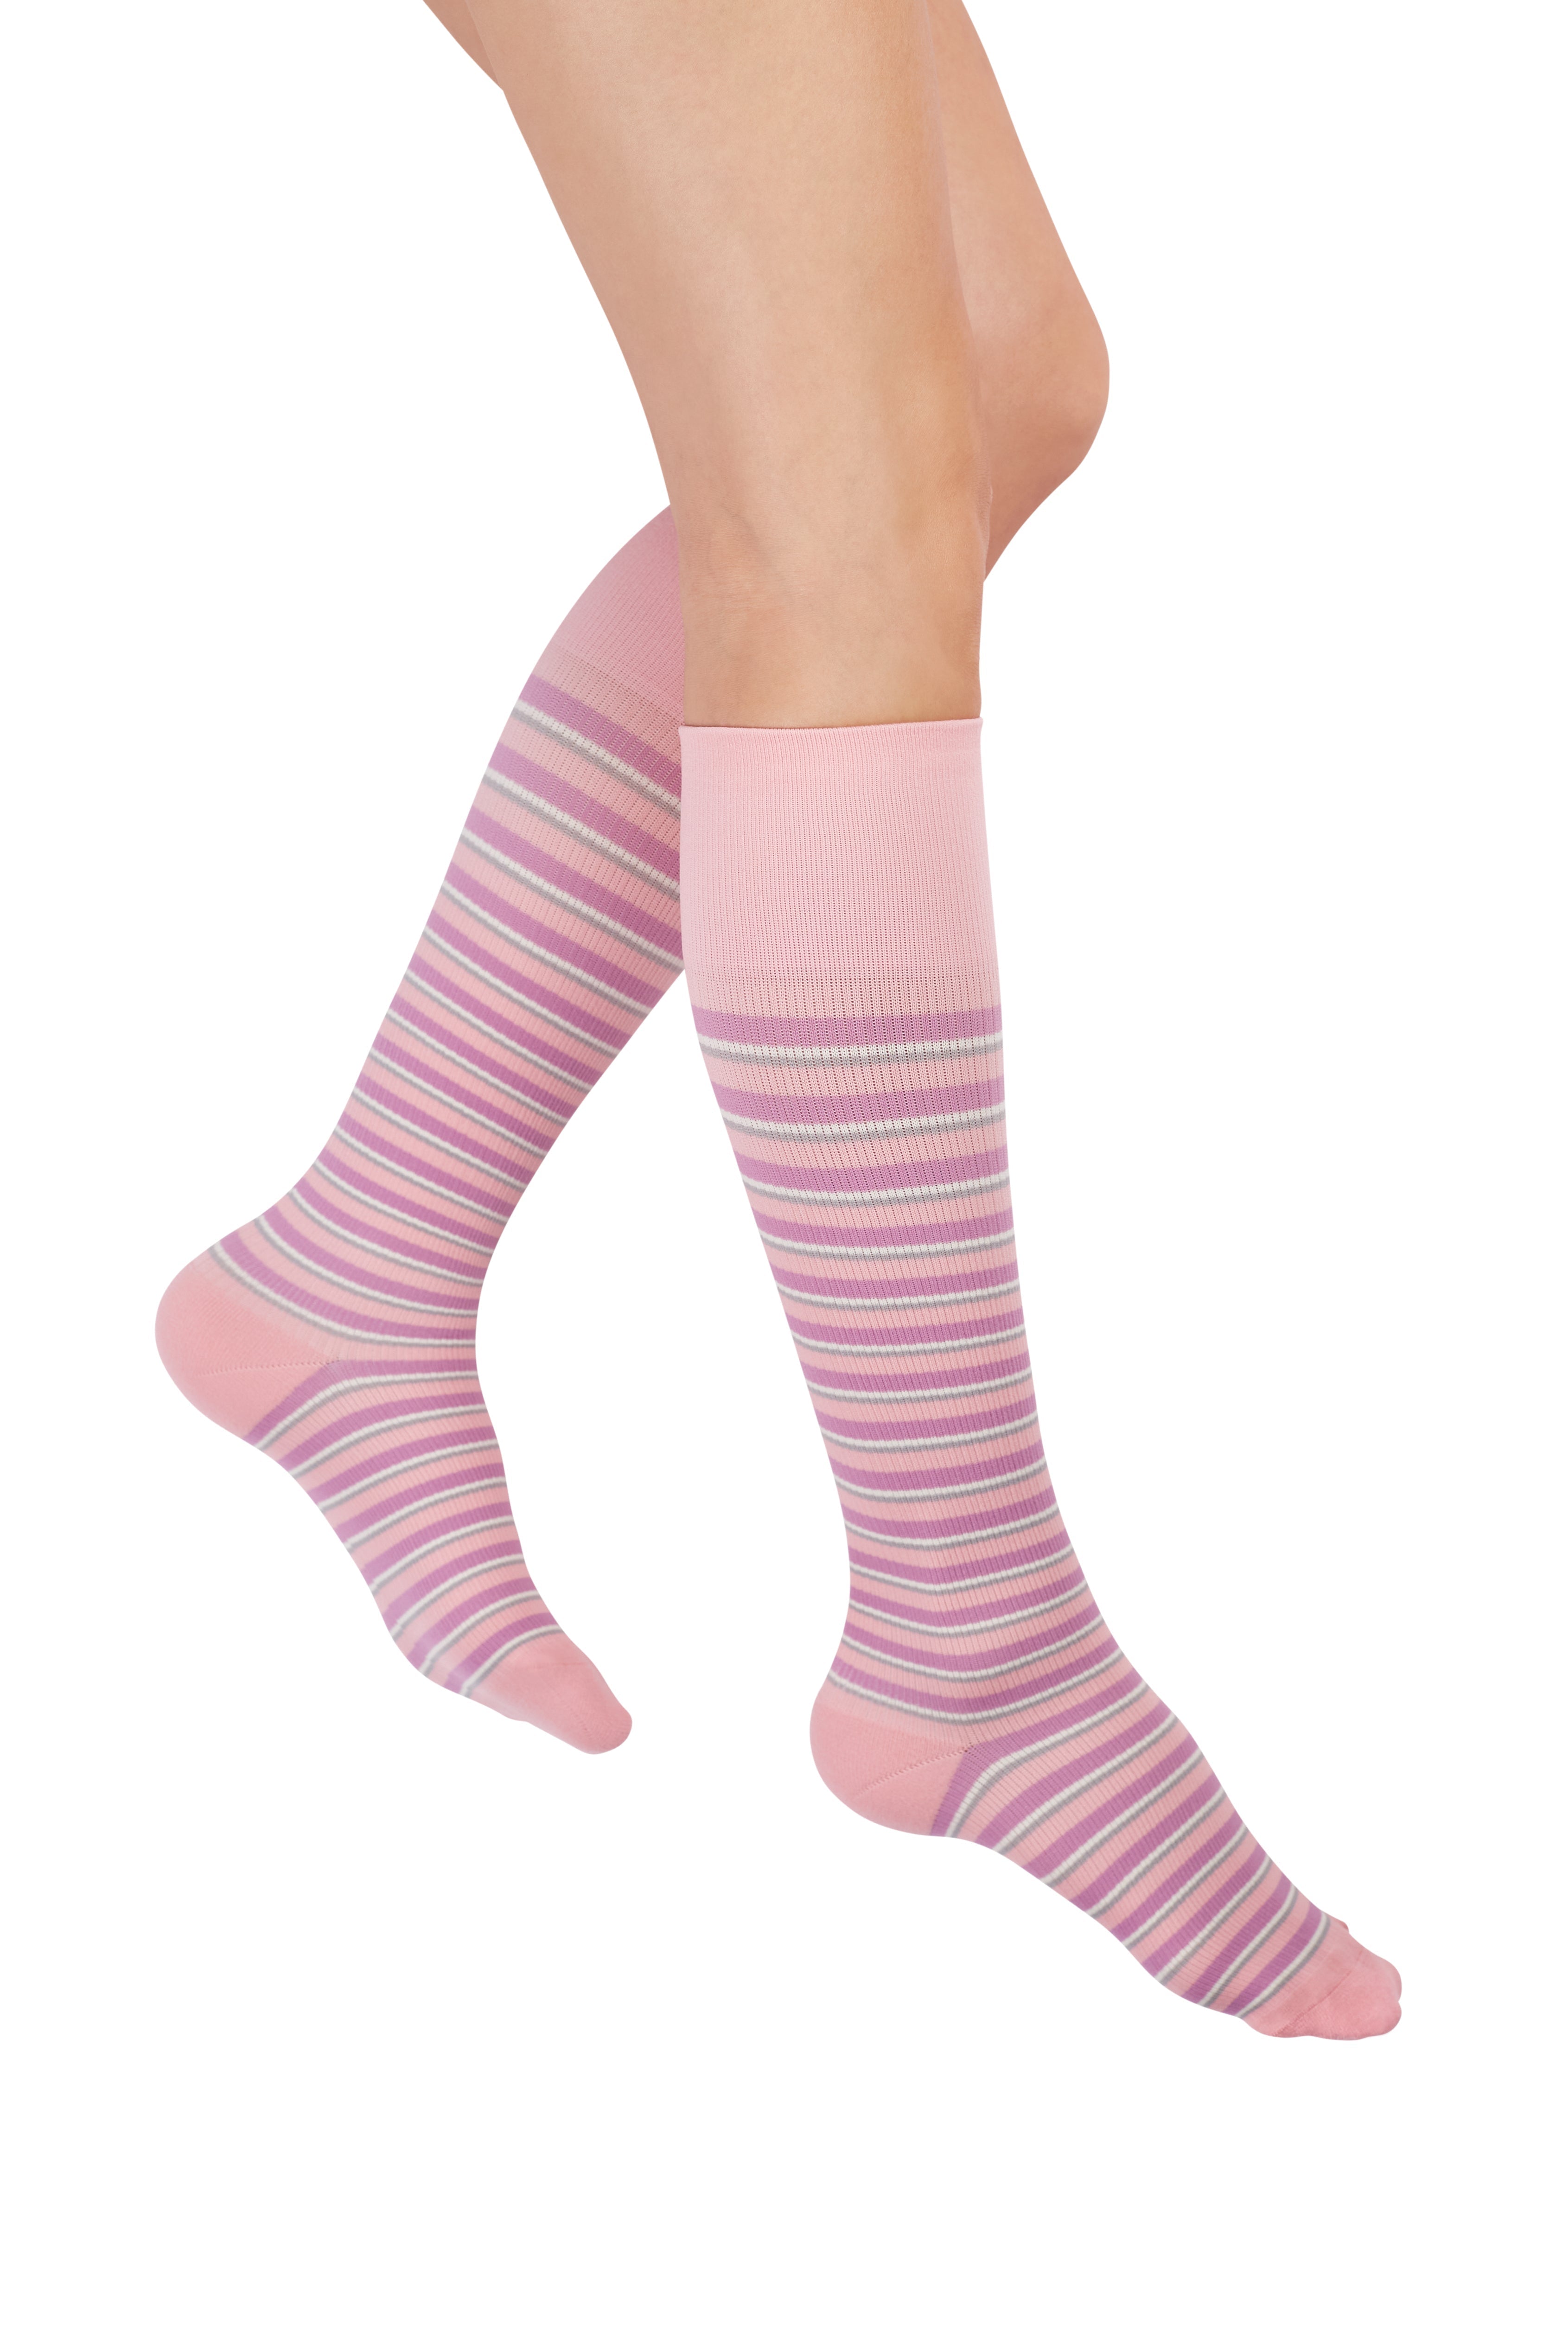 Rejuva® Stirrup Women's Legging 15-20 mmHg – Compression Store